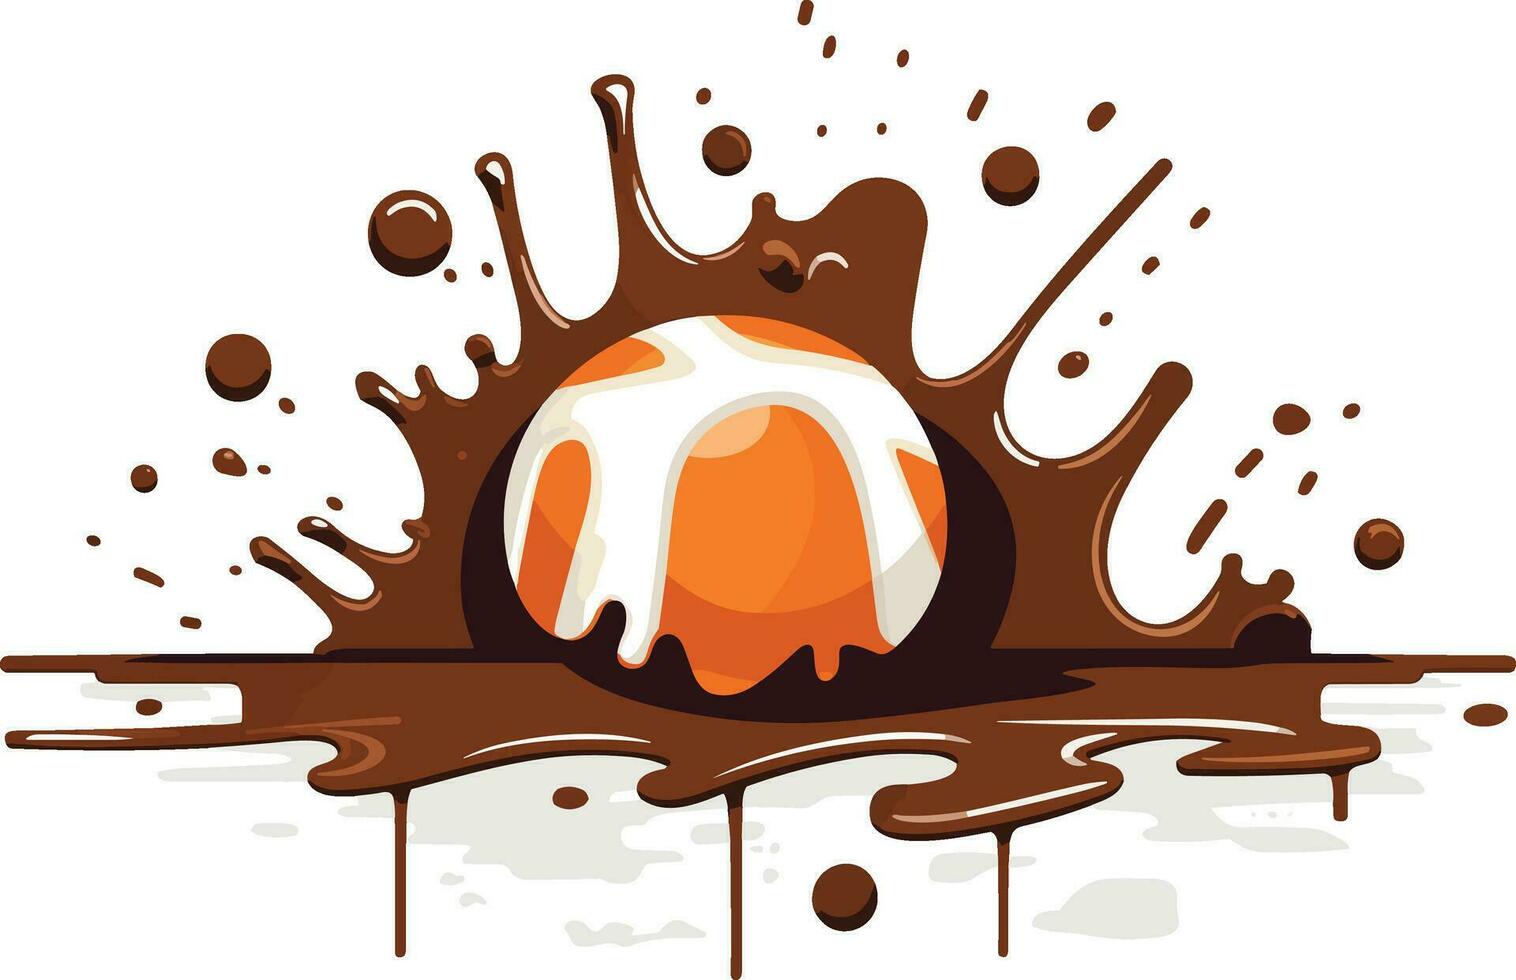 chocola spatten illustratie vector